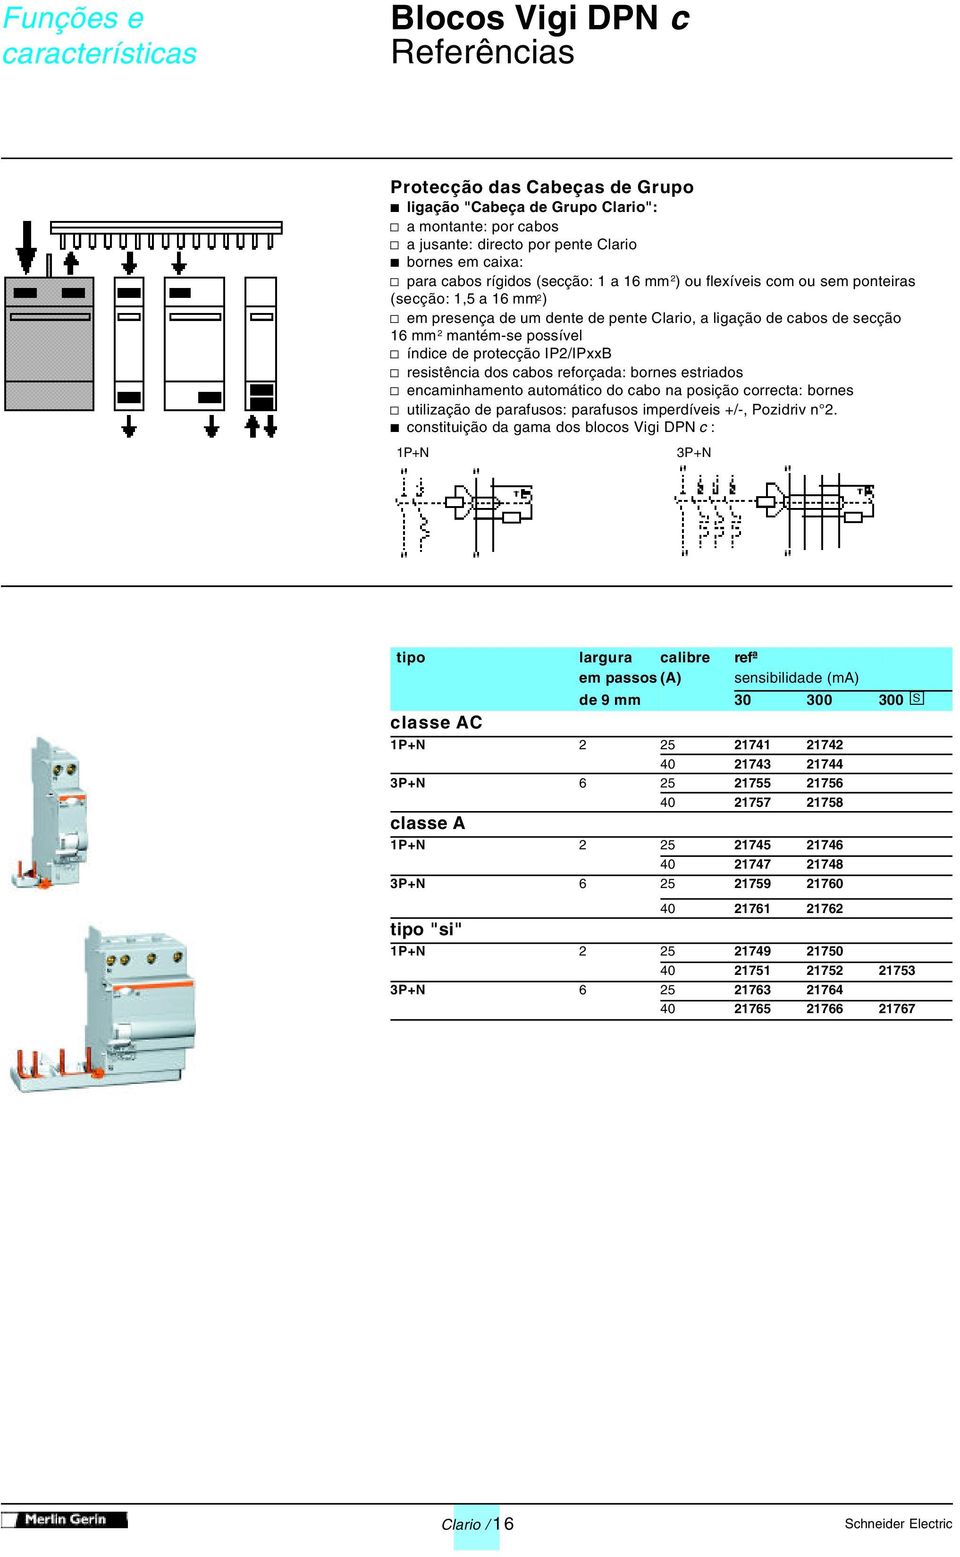 protecção IP2/IPxxB v resistência dos cabos reforçada: bornes estriados v encaminhamento automático do cabo na posição correcta: bornes v utilização de parafusos: parafusos imperdíveis +/-, Pozidriv